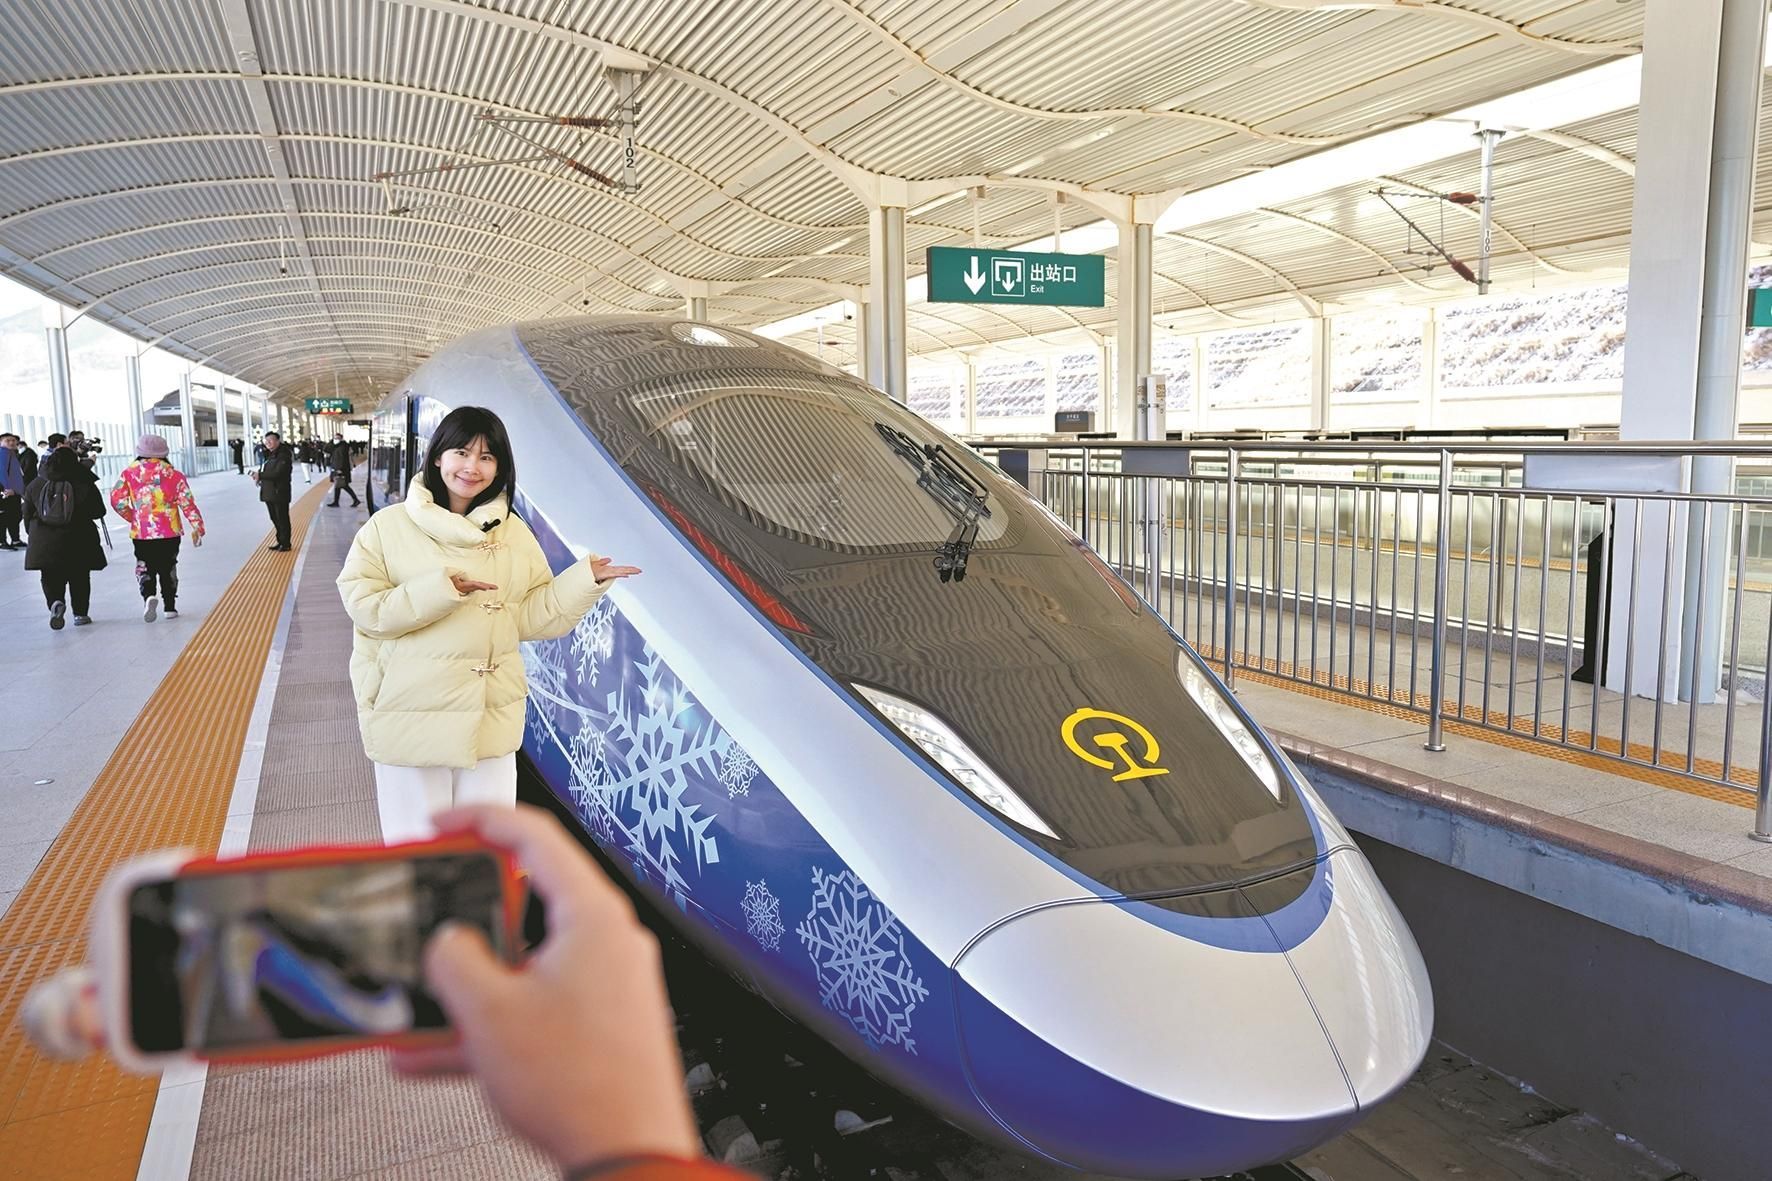 当日,北京冬奥列车亮相京张高铁